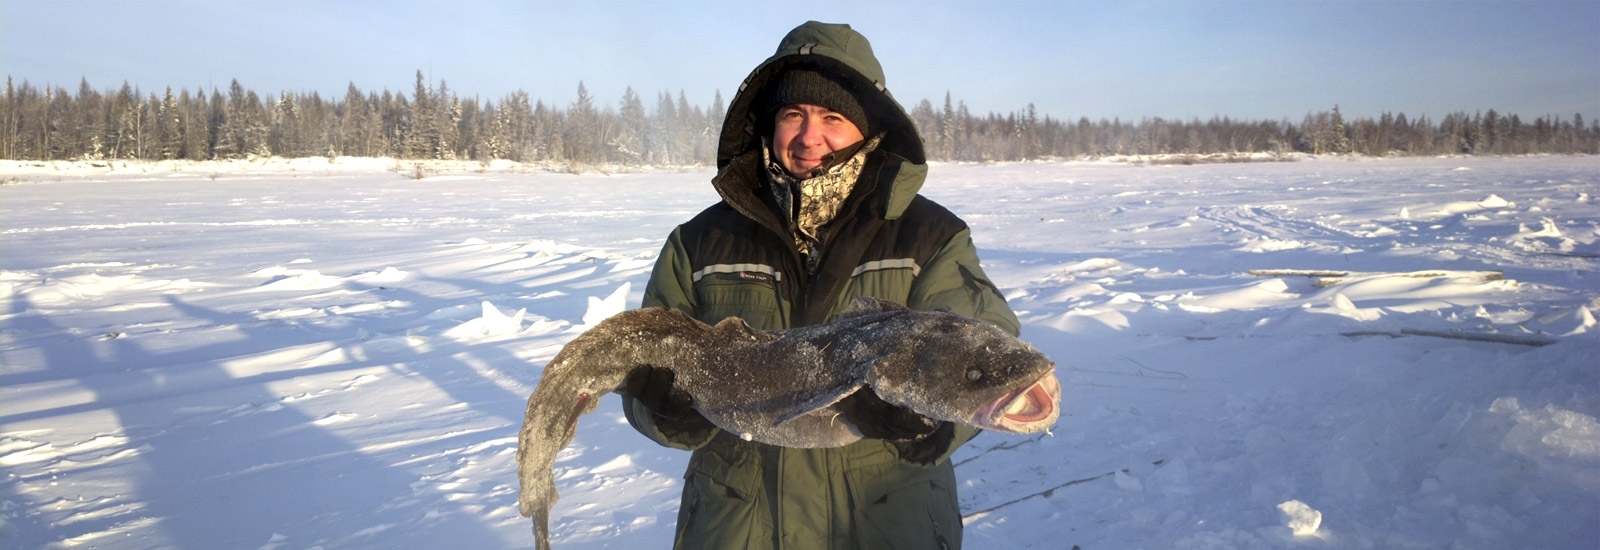 Зимняя рыбалка в Якутии <em>организация туров под ключ</em>